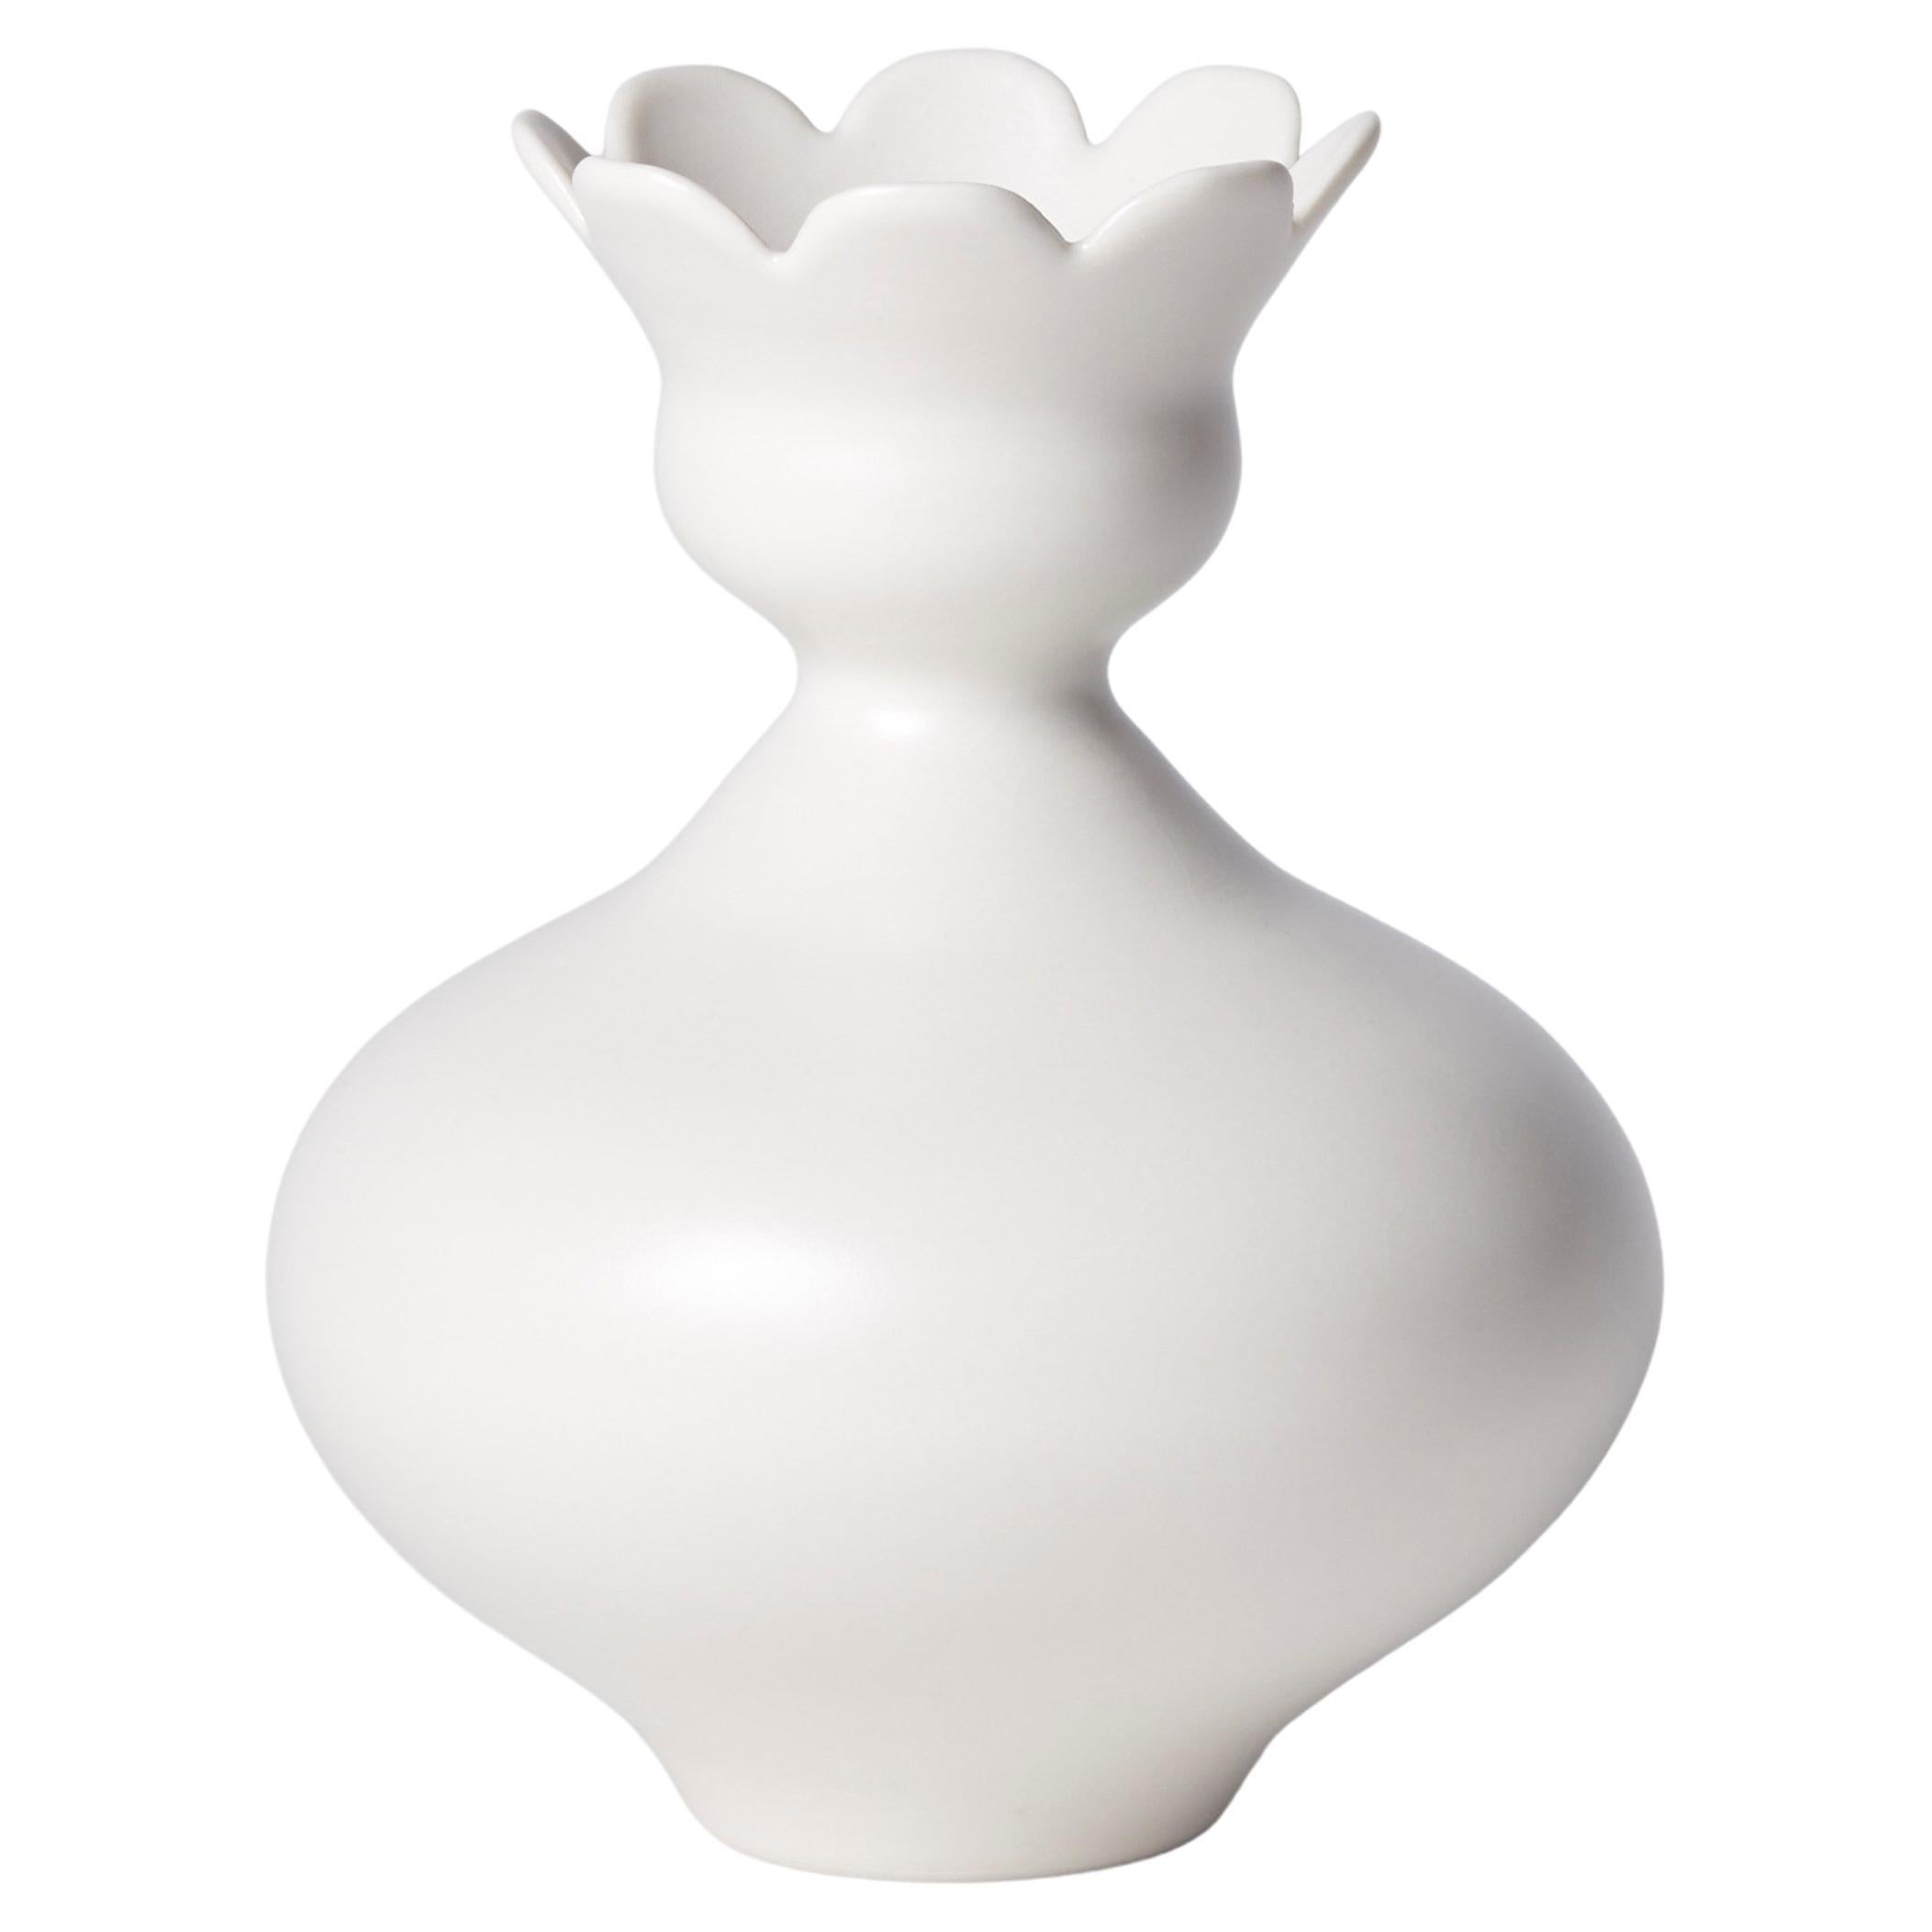 Vase with Daisy Rim, a unique white porcelain vase by Vivienne Foley